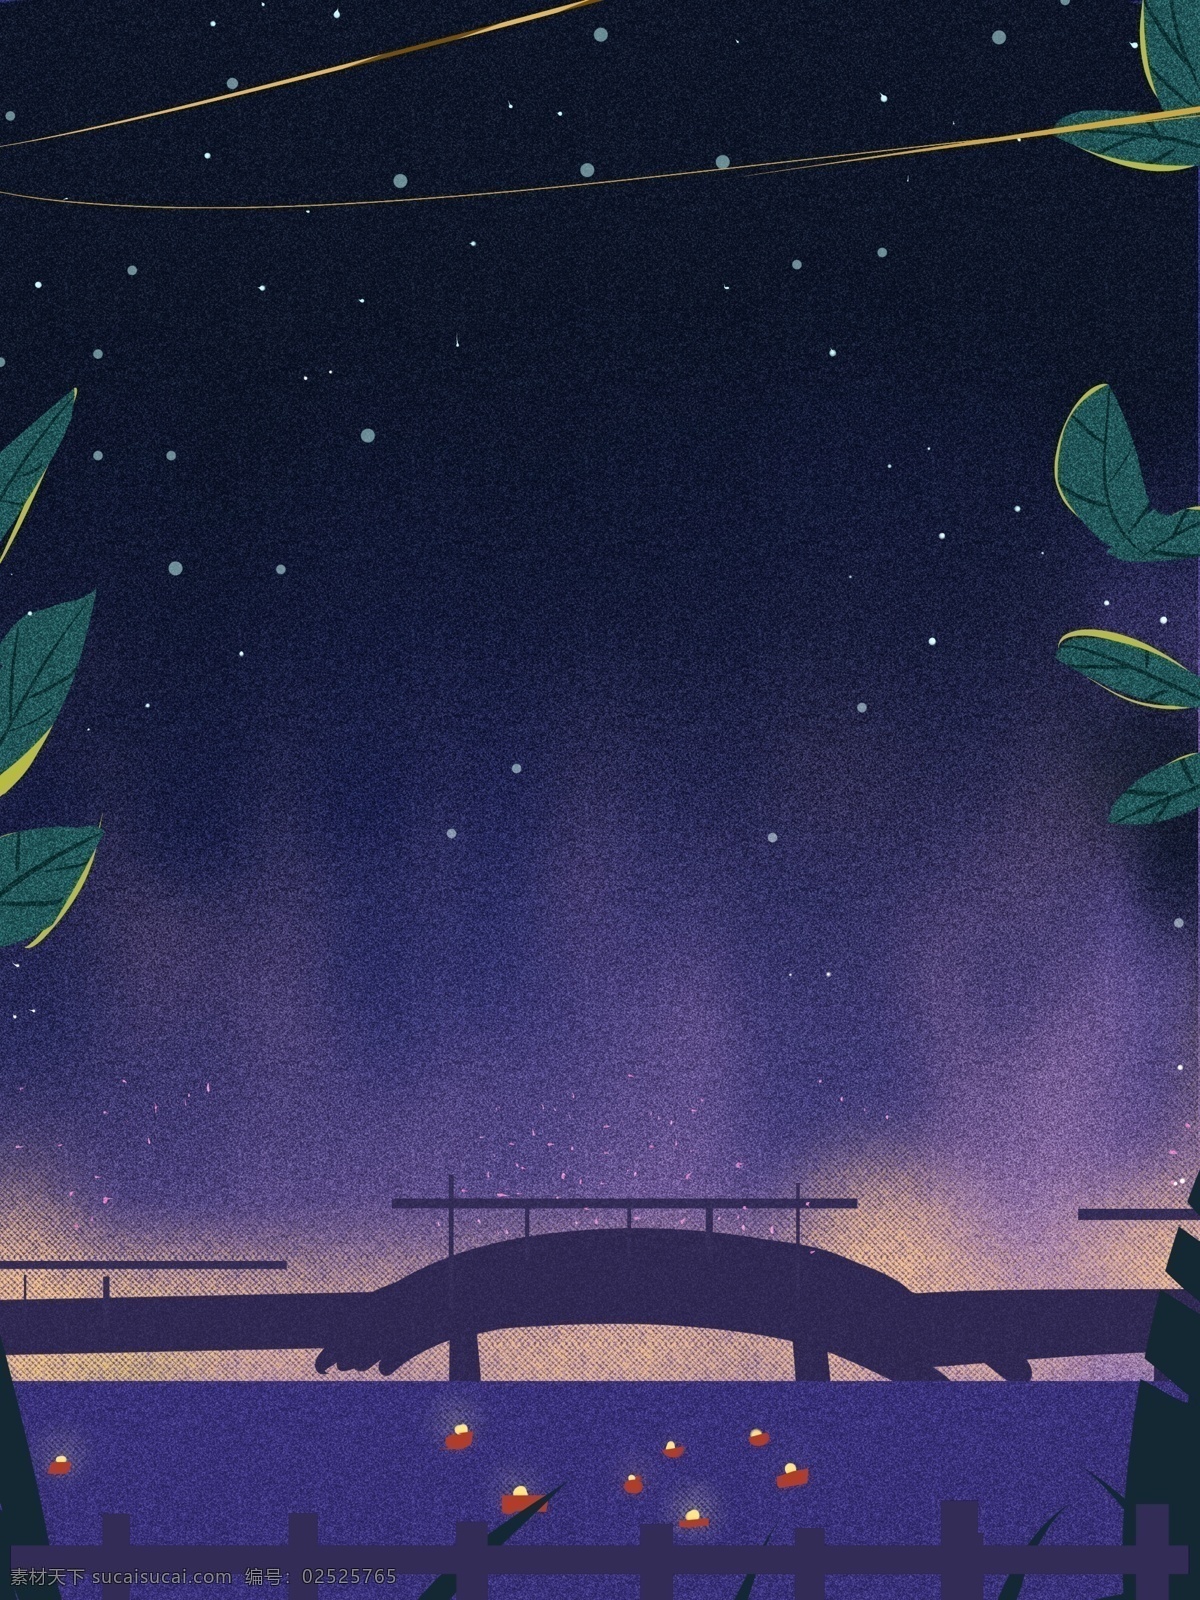 手绘 紫色 星空 背景 背景图 创意 清新背景 湖面 拱桥 广告背景 手绘背景 促销背景 背景展板图